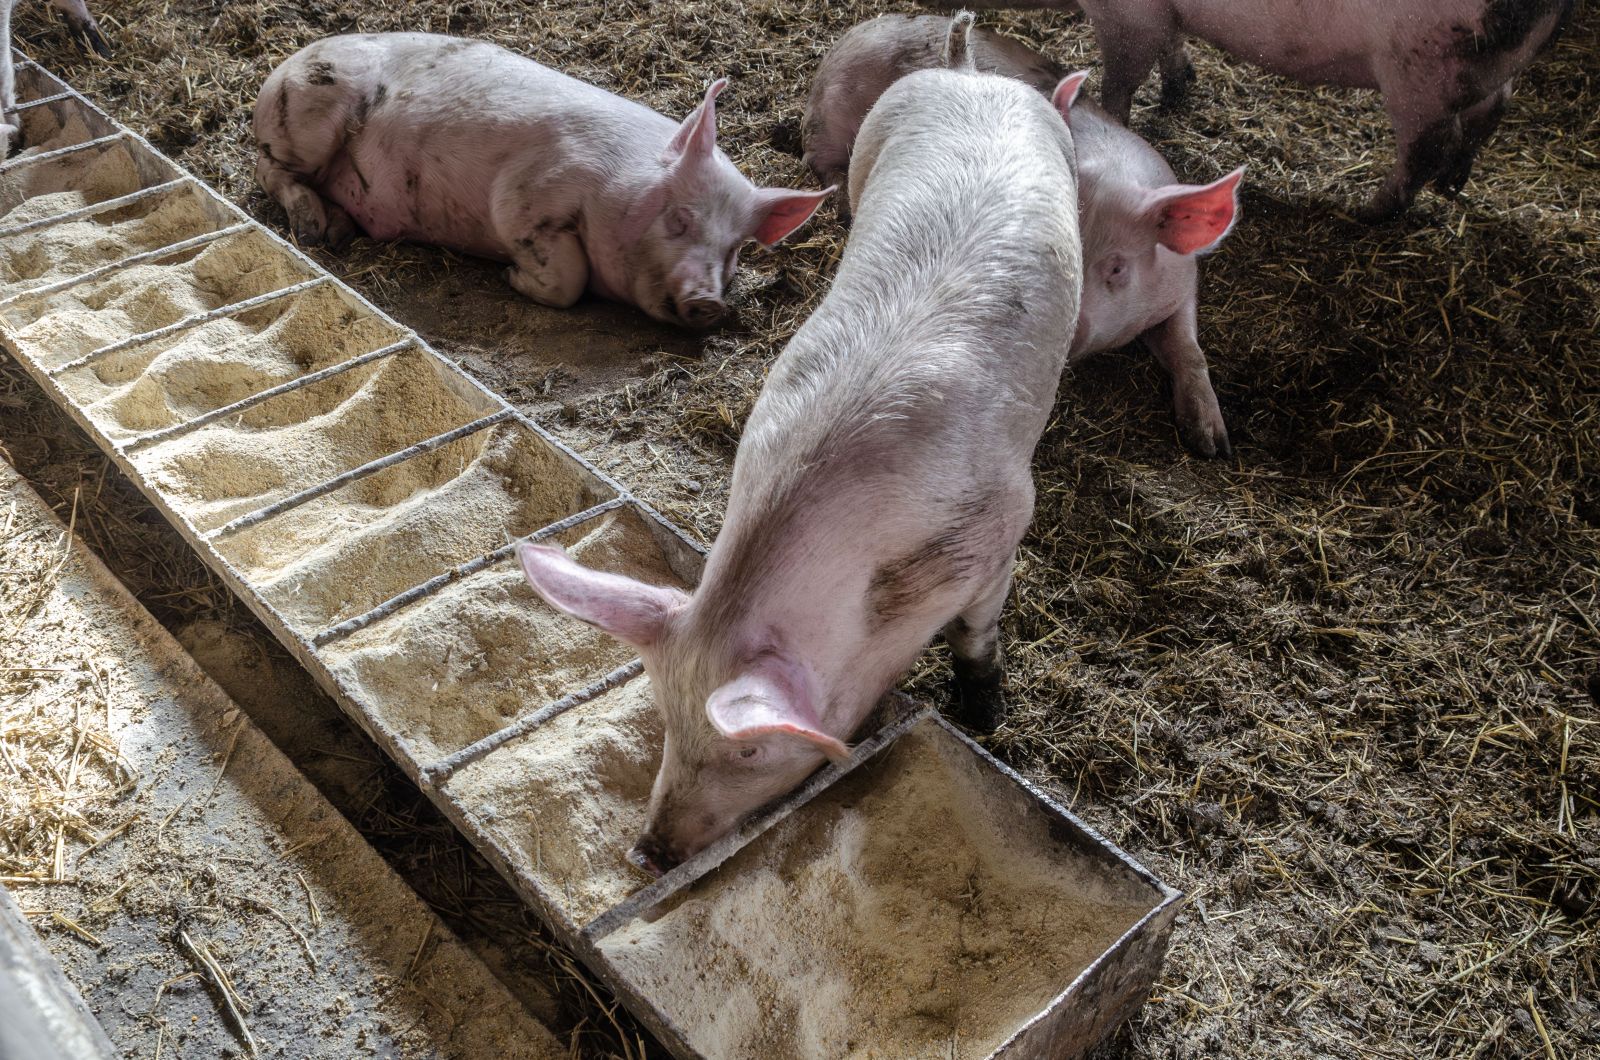 Pig feeding from trough in pen by Yuliya Sidorova via Istock